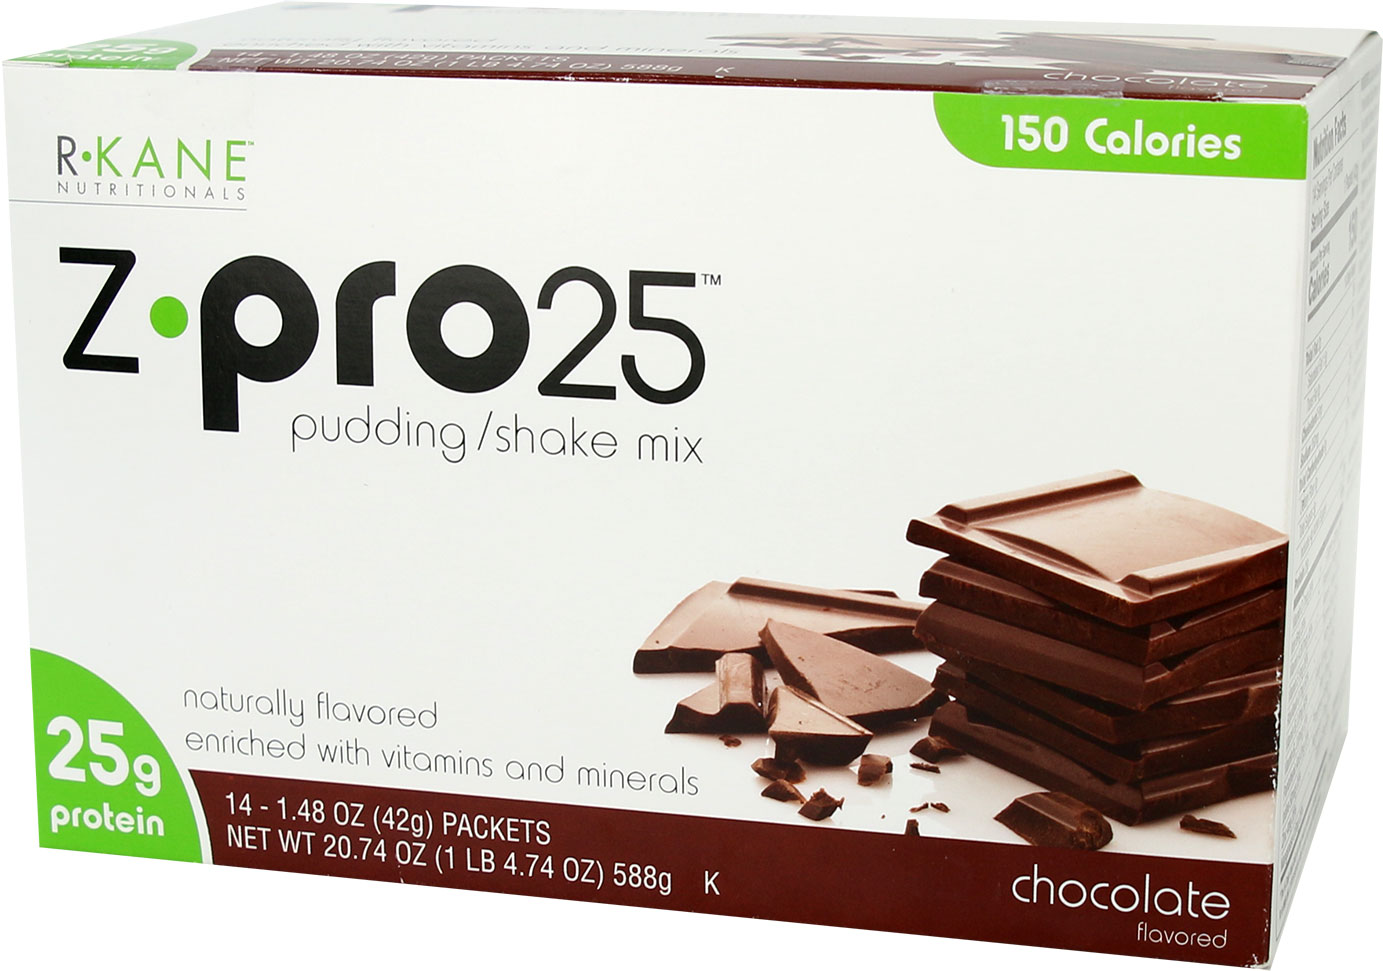 Z-Pro25 weight loss pudding mix